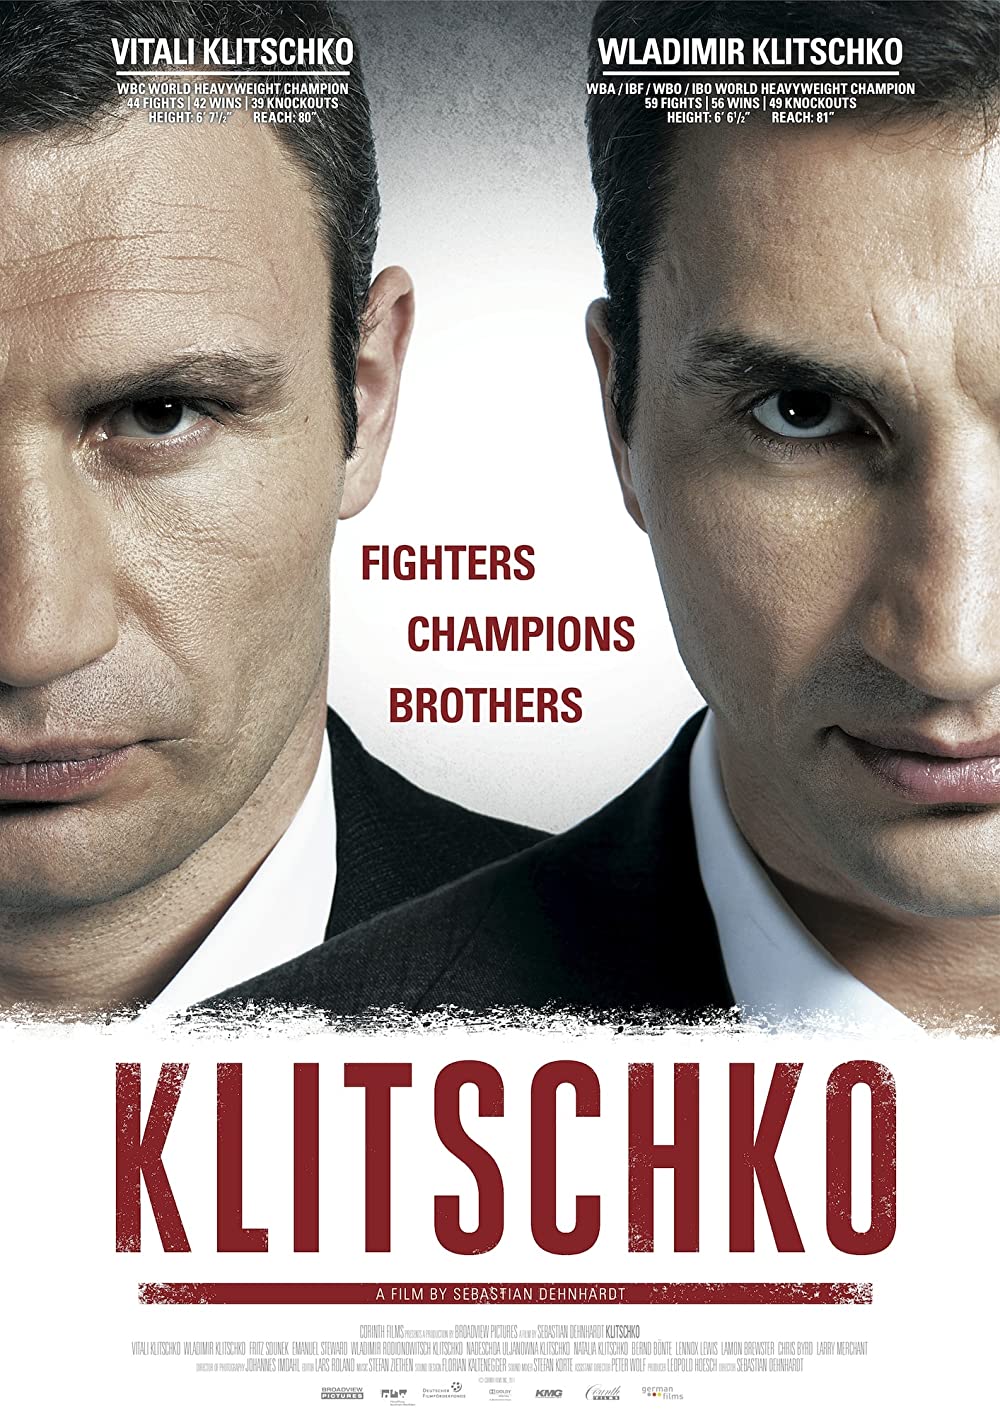 Filmbeschreibung zu Klitschko (OV)